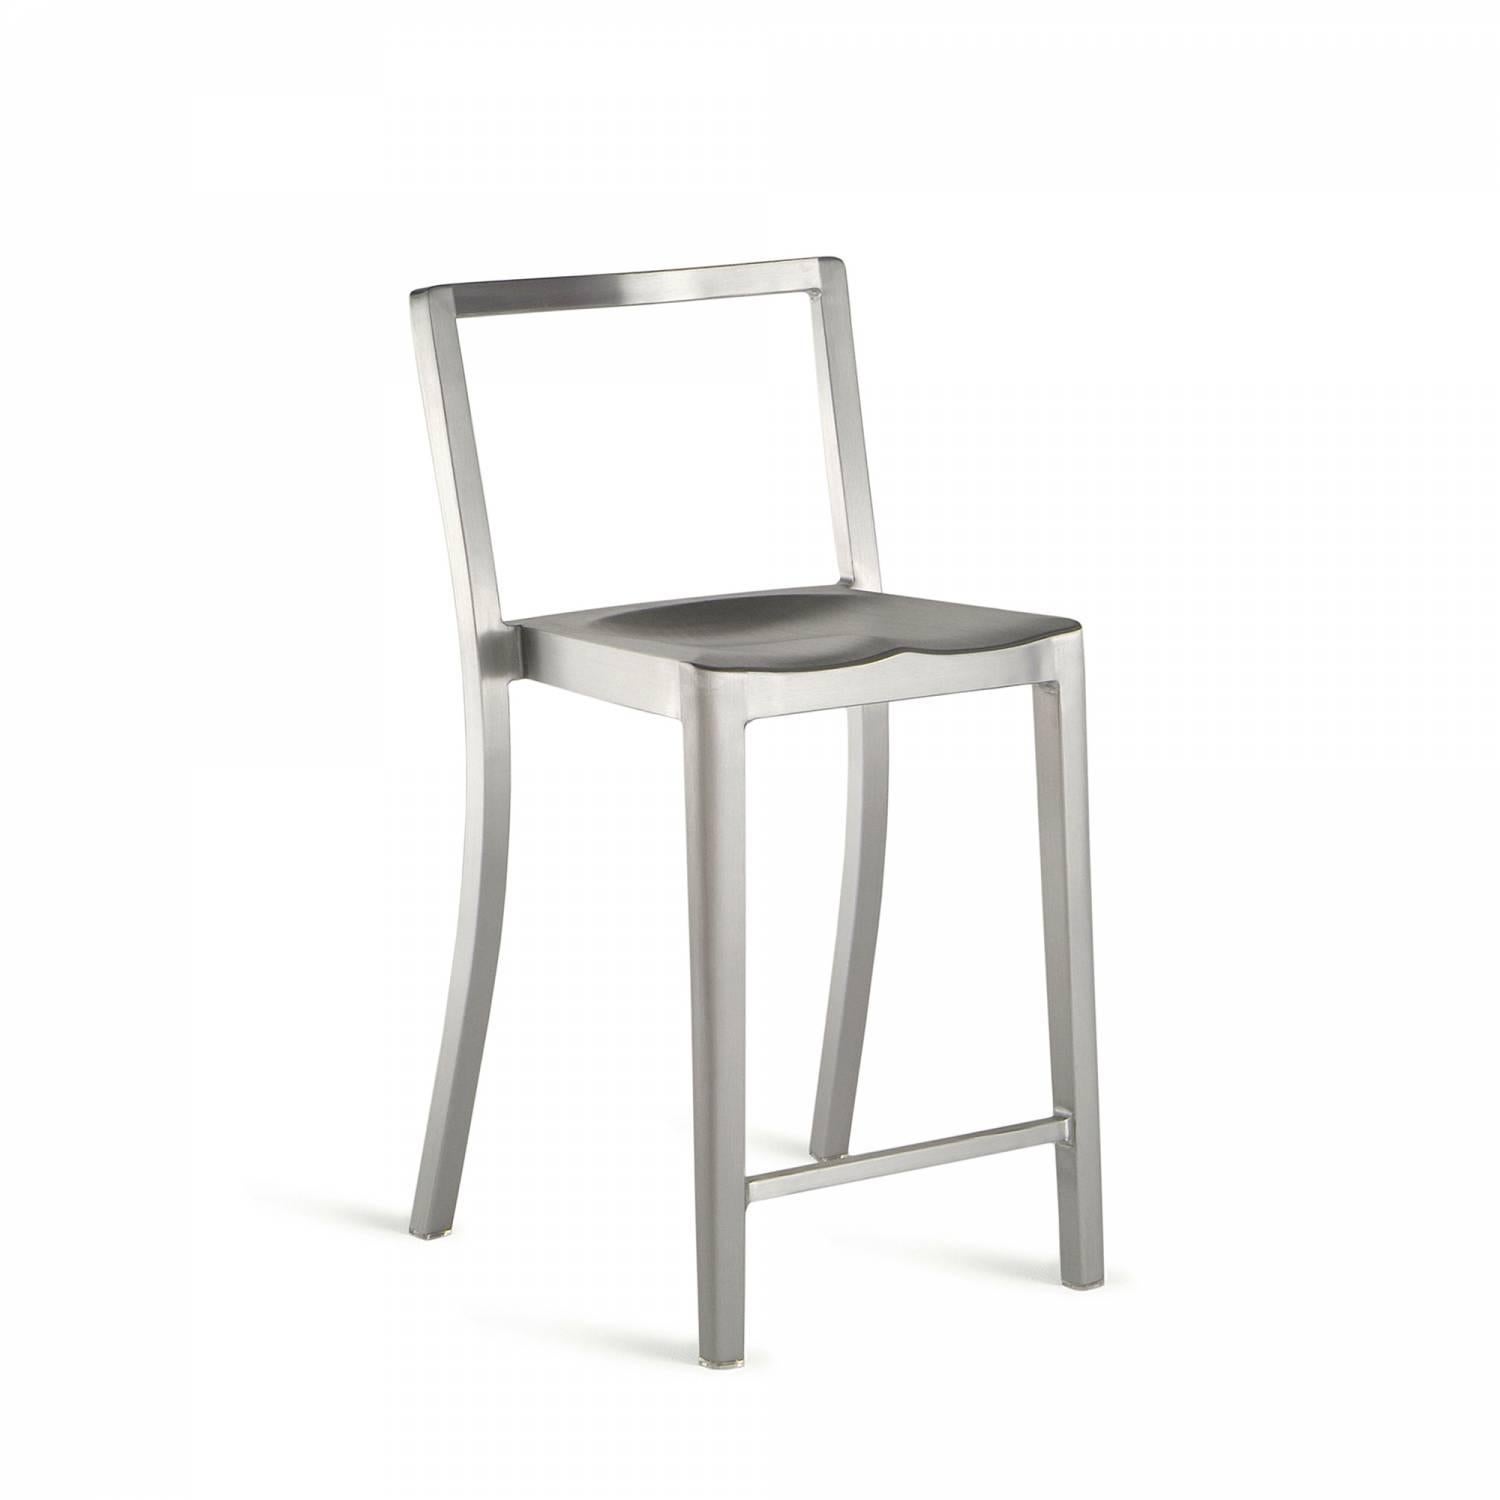 Icon ist ein stapelbarer Stuhl, der dem berühmten, von Starck entworfenen Hudson-Stuhl ähnelt. Es wird weltweit in Hotels, Bars und Restaurants, aber auch in Schulungszentren, Versammlungsräumen und Schulen eingesetzt. Starck beschreibt Icon als